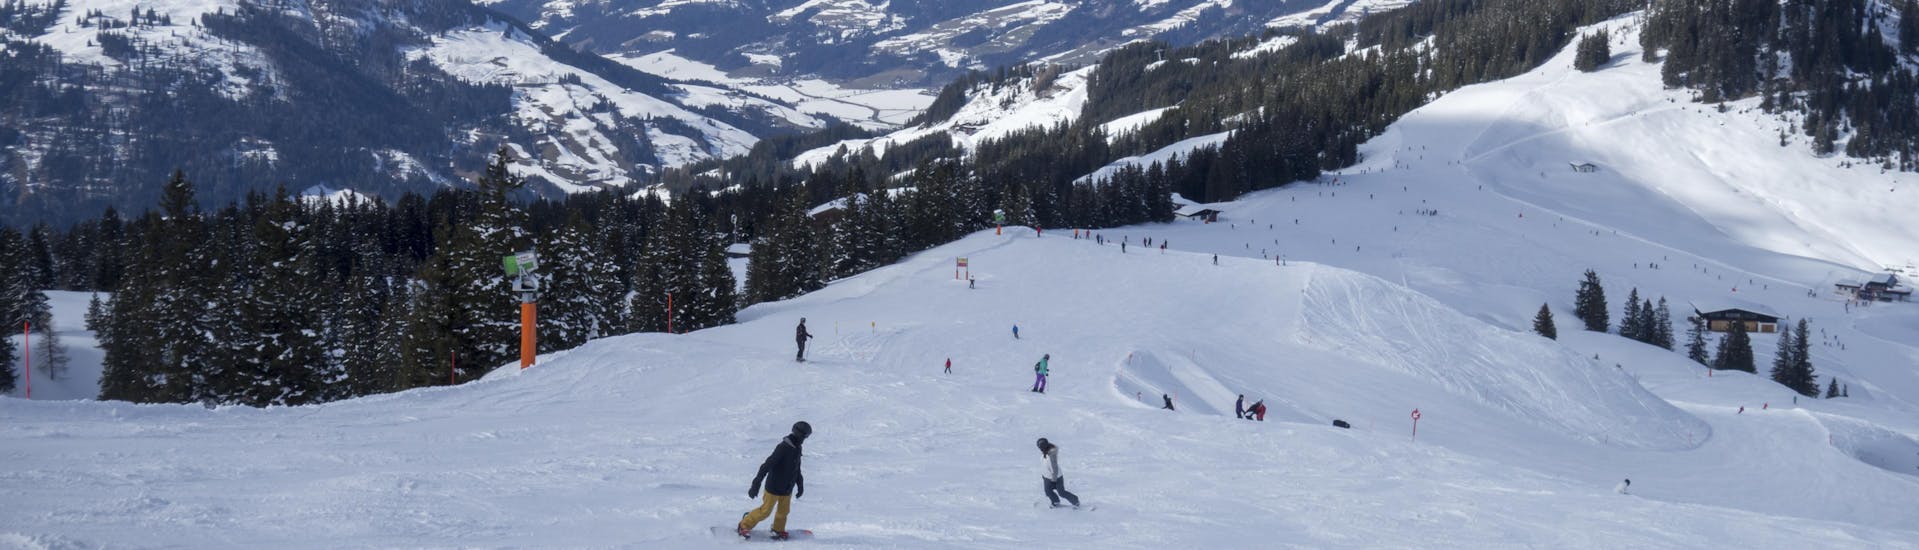 Adultos y niños esquiando en la estación de esquí de Kirchberg.